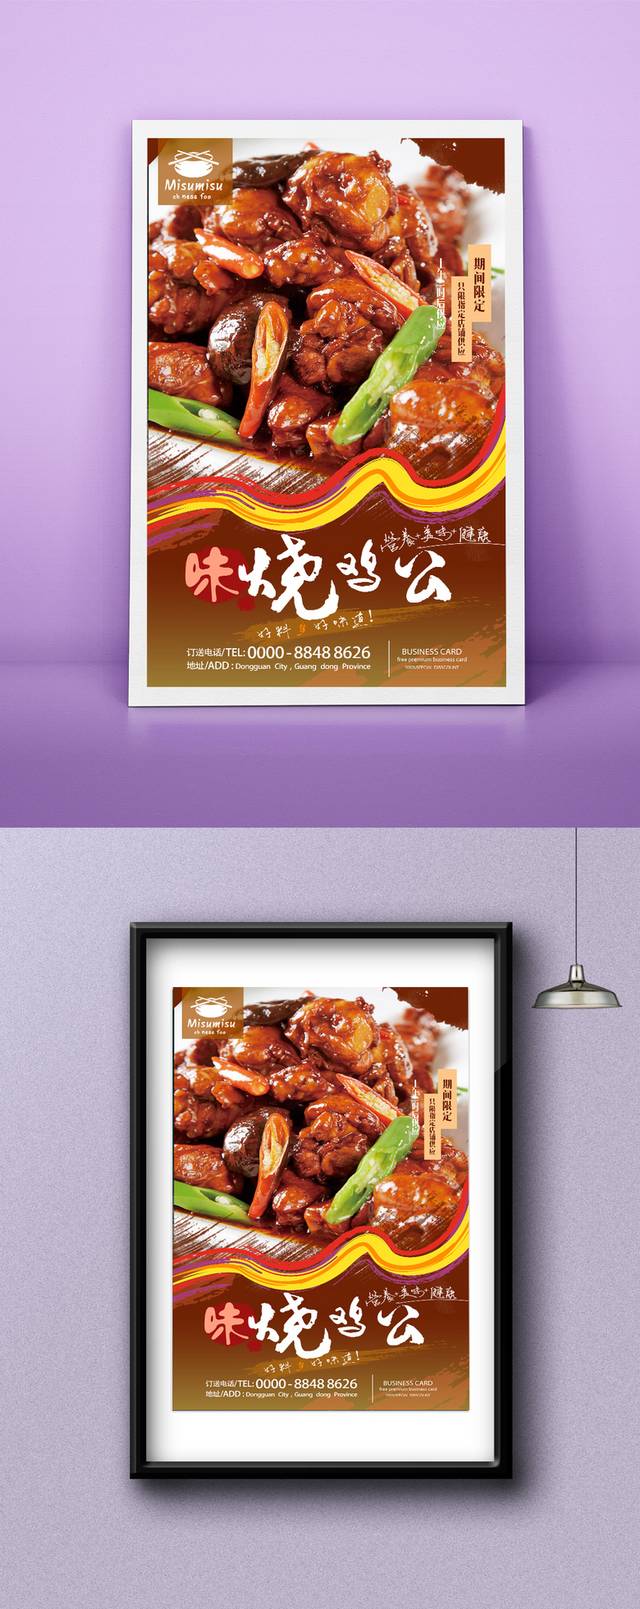 经典美味烧鸡公宣传海报设计